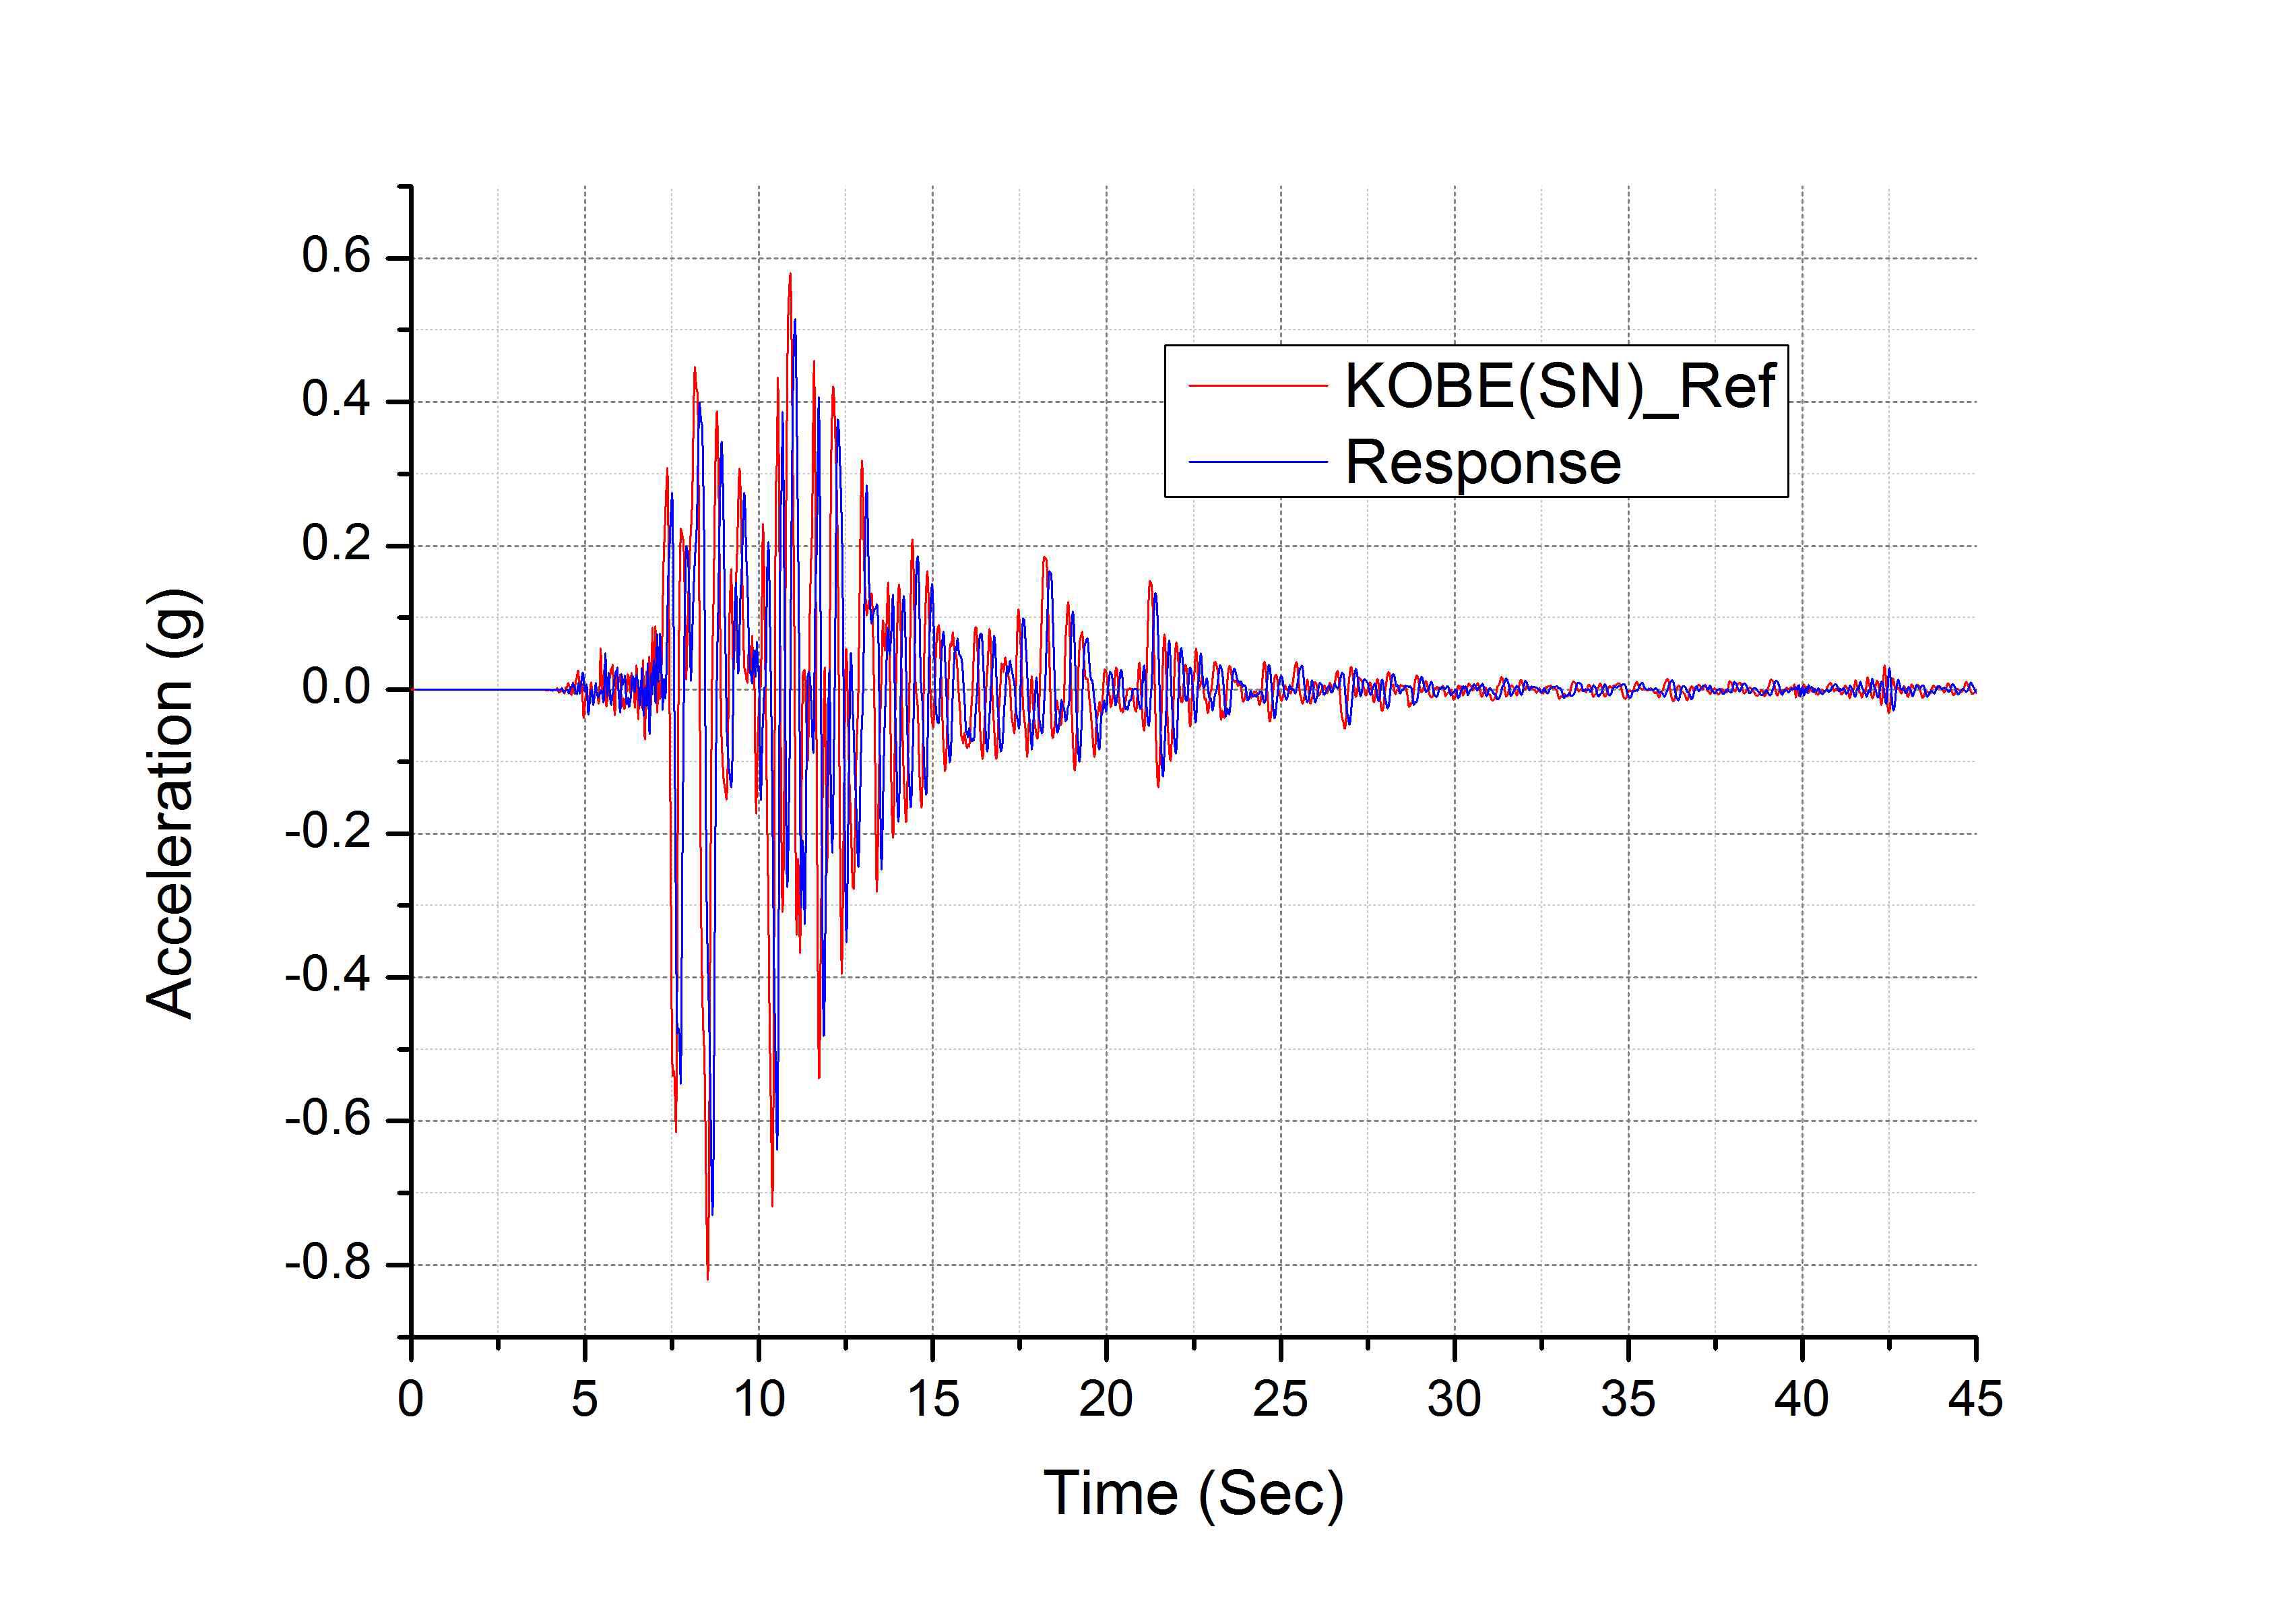 고베 지진파(South-North) 가진 시험 응답 파형 비교 그래프